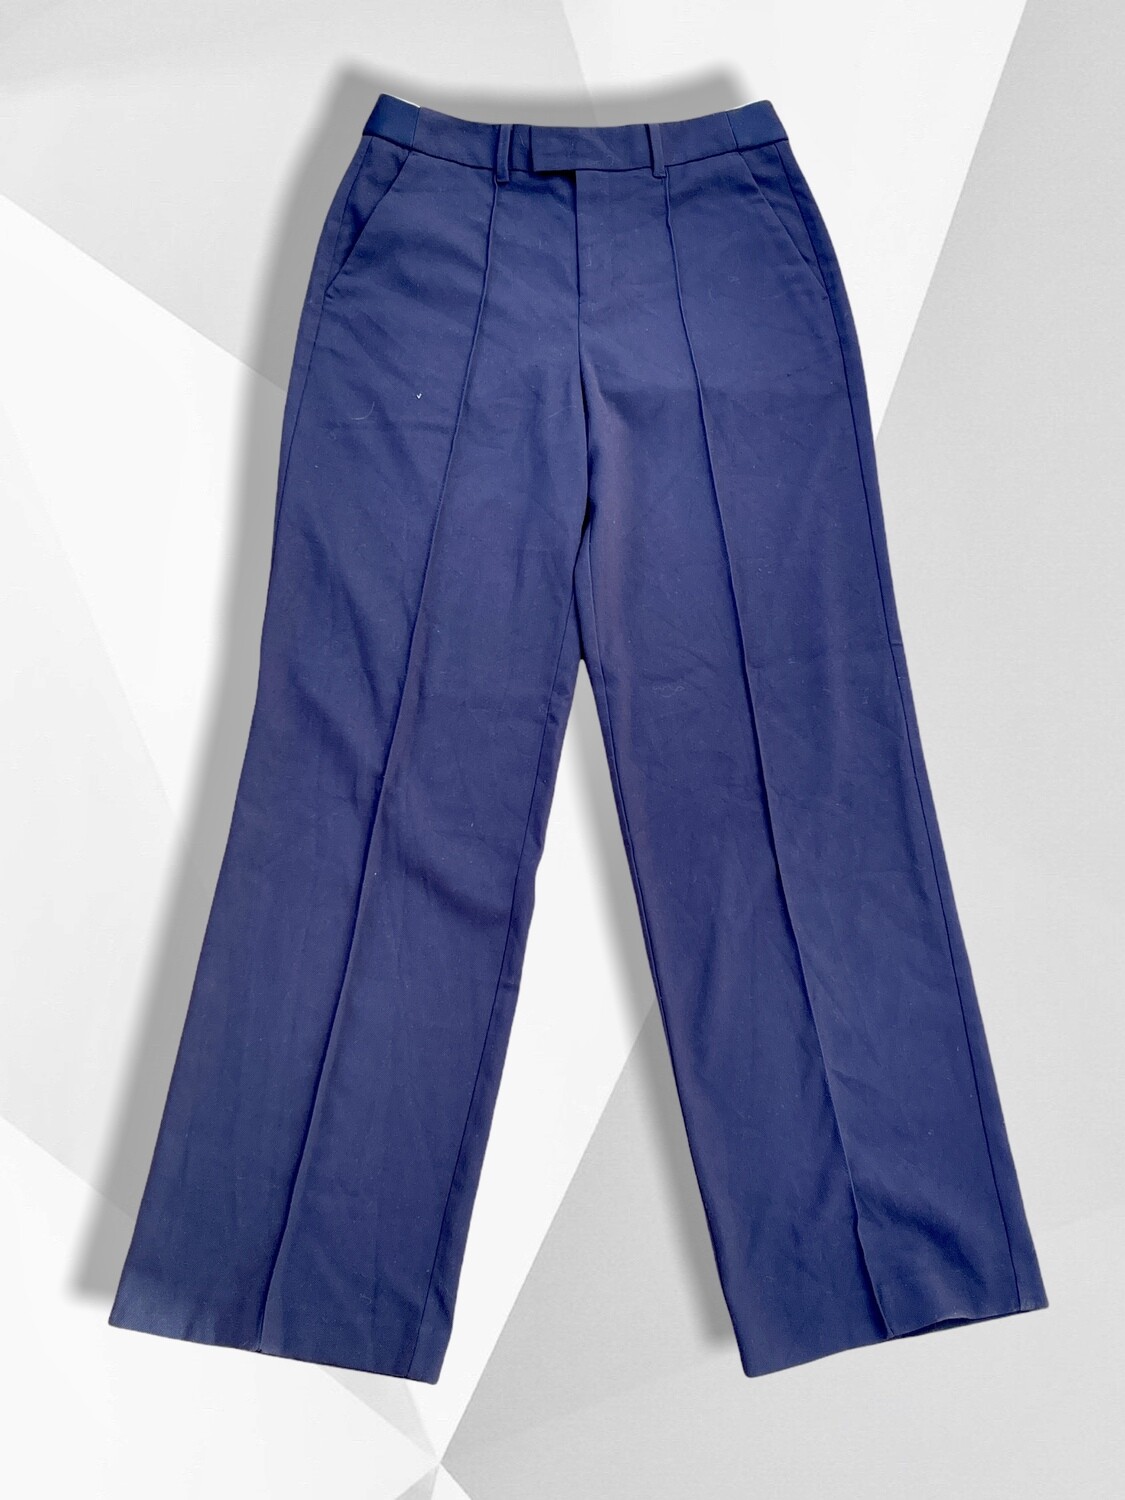 Pantalón de vestir azul marino S.OLIVER Talla 38/40